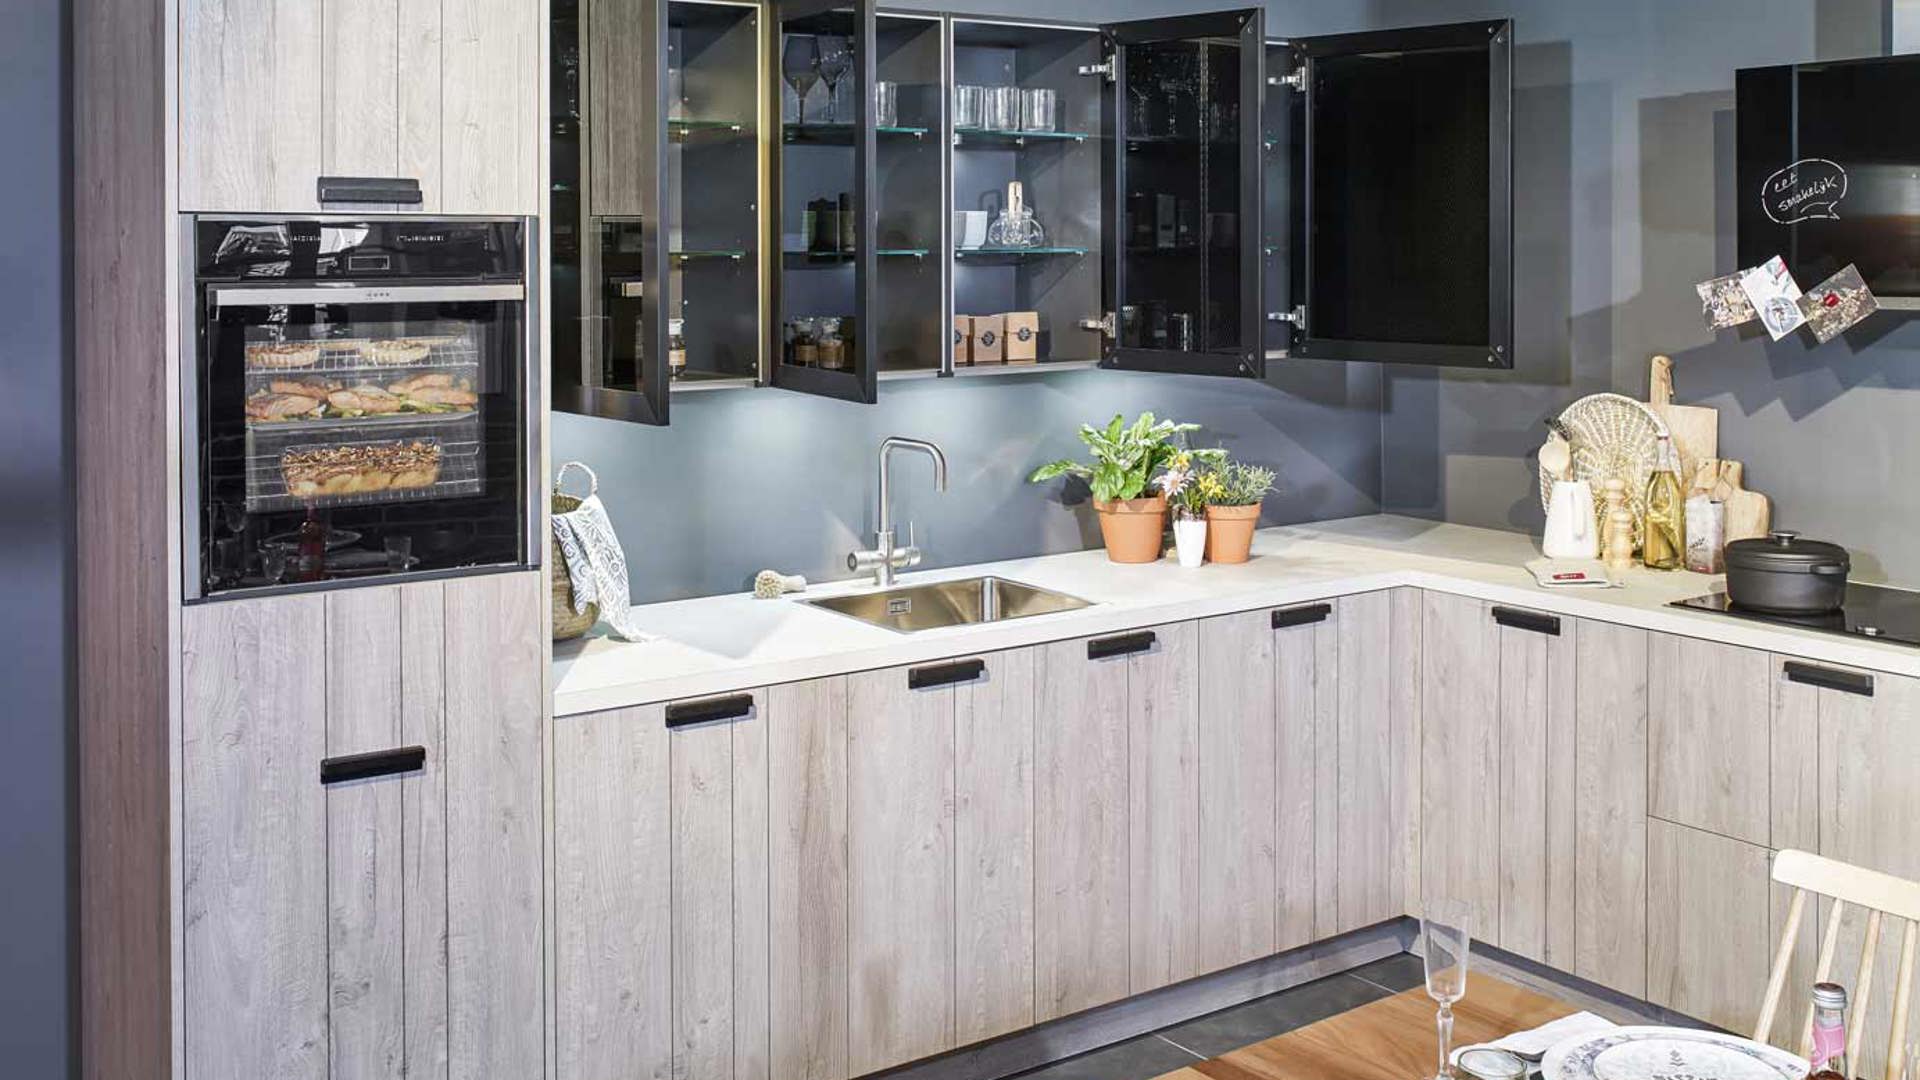 Houten keuken in industriële stijl, met betonlook werkblad en donkere bovenkasten